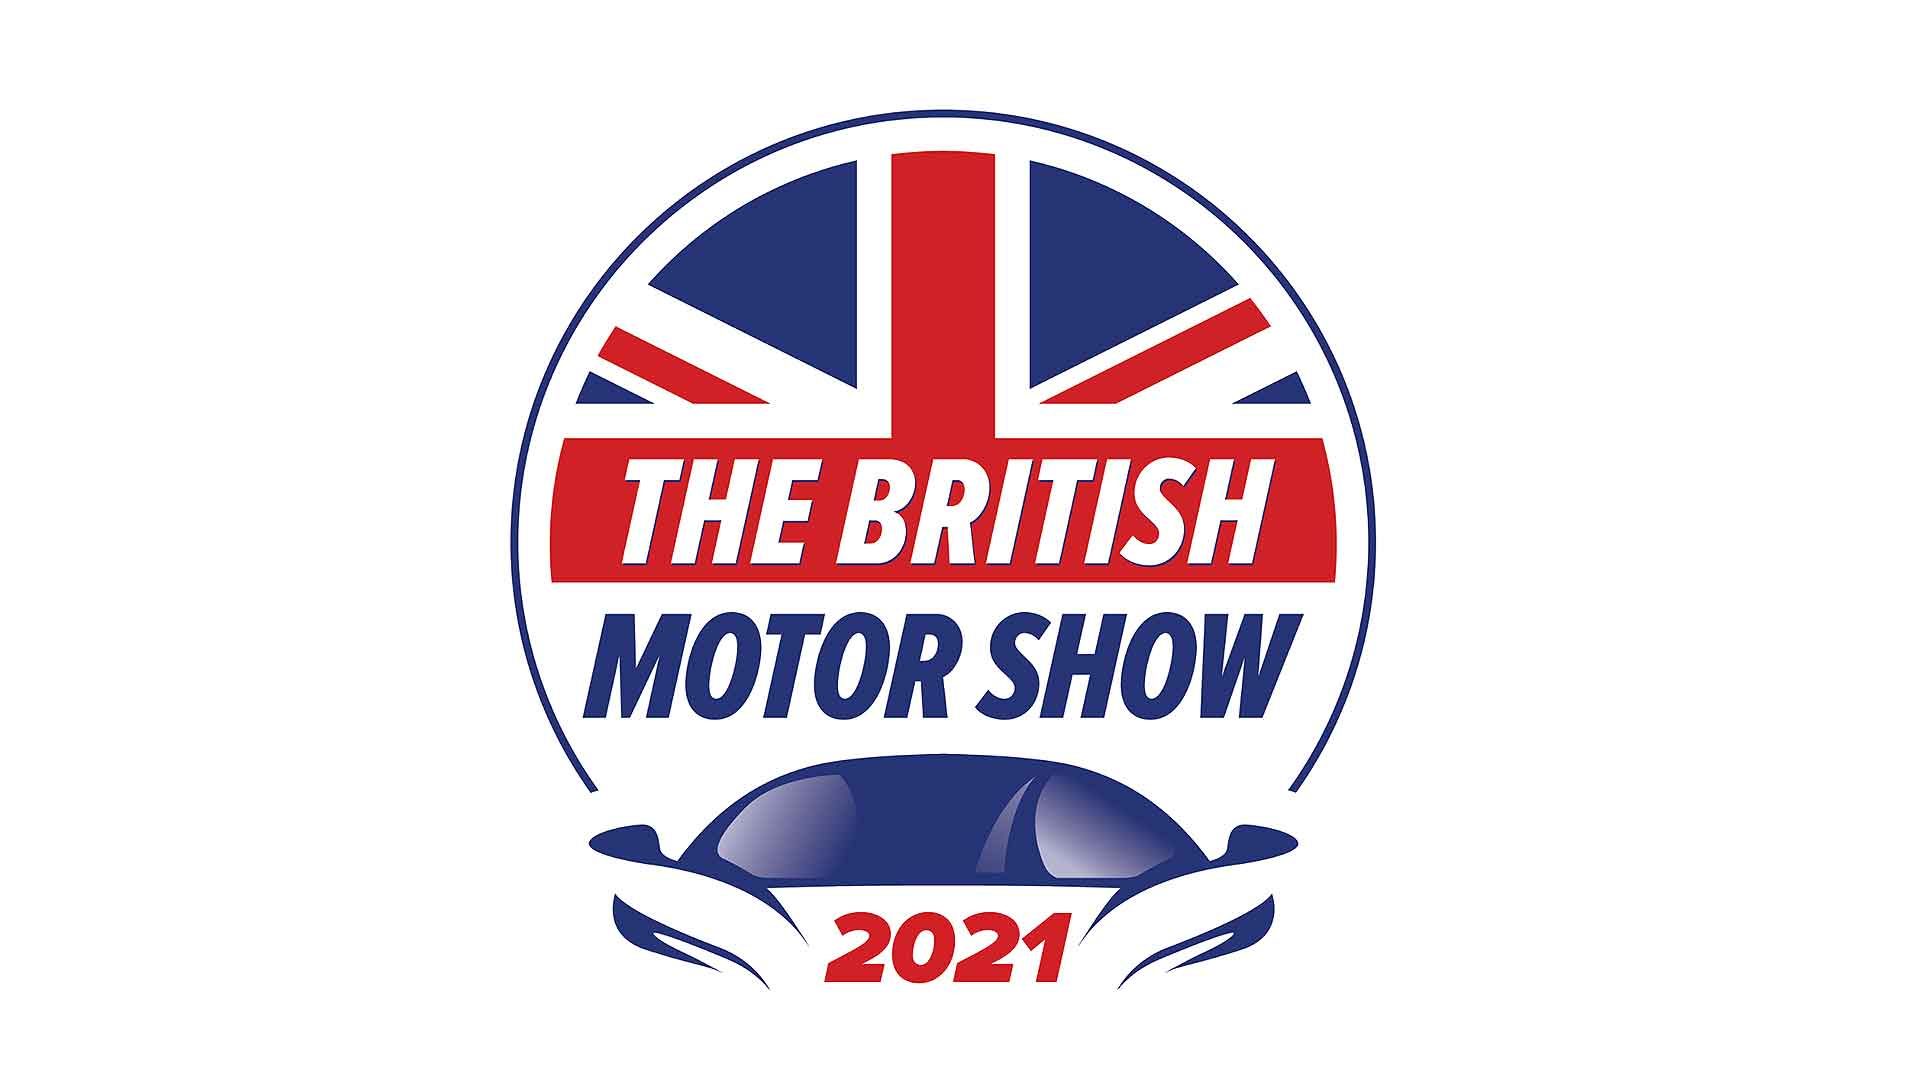 Britsh Motor Show 2021 logo